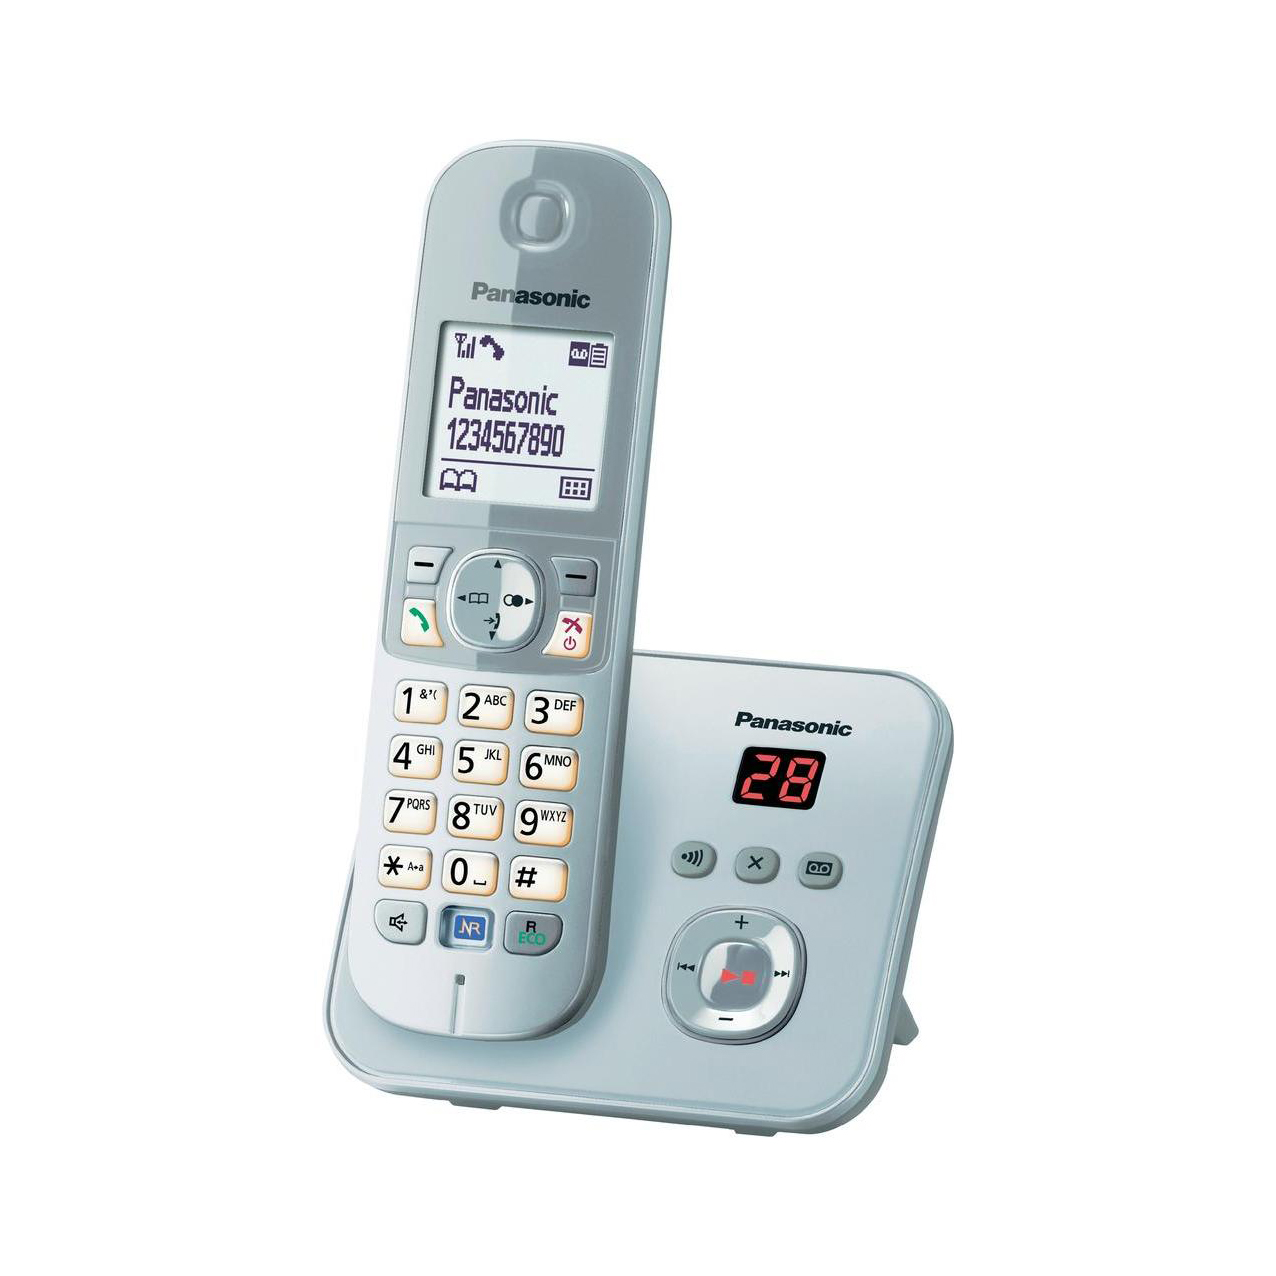 تلفن بیسیم پاناسونیک مدل Panasonic-KX-TG6821 ساخت مالزی